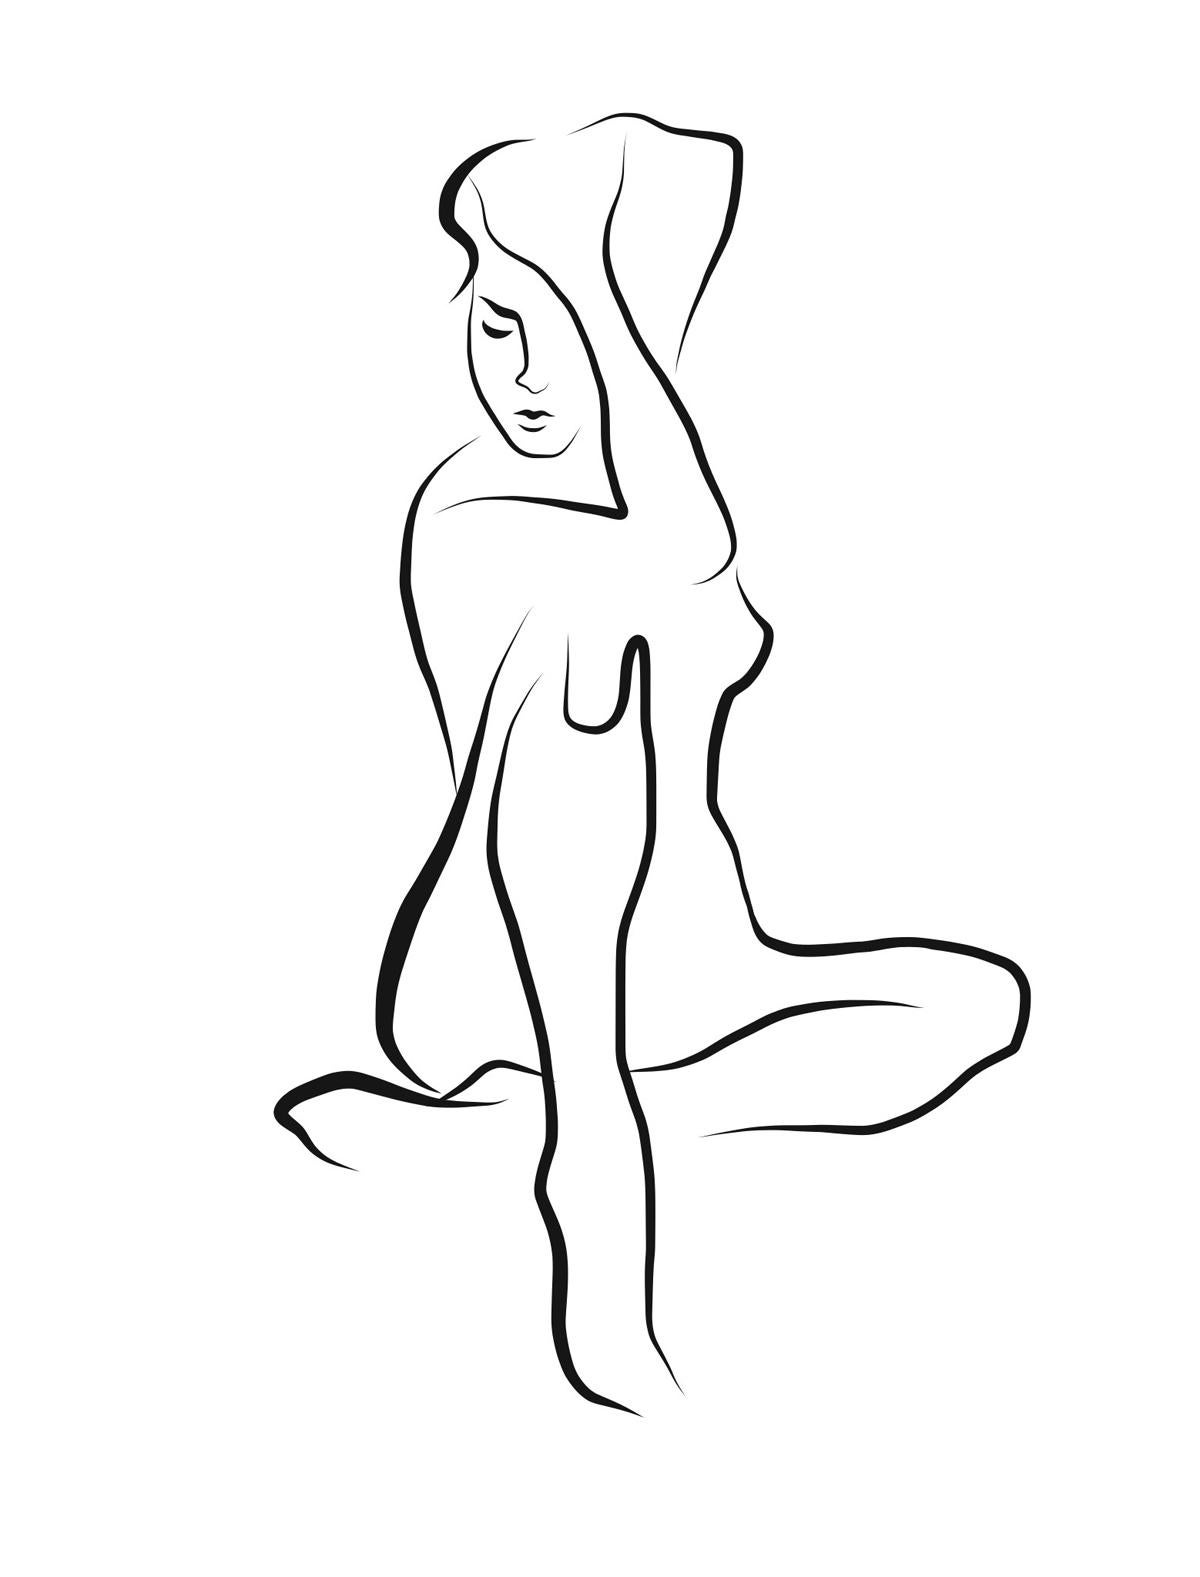 Haiku #41 – Digitale Vector-Zeichnung einer weiblichen Aktfigur mit tiefem Scharfsinn